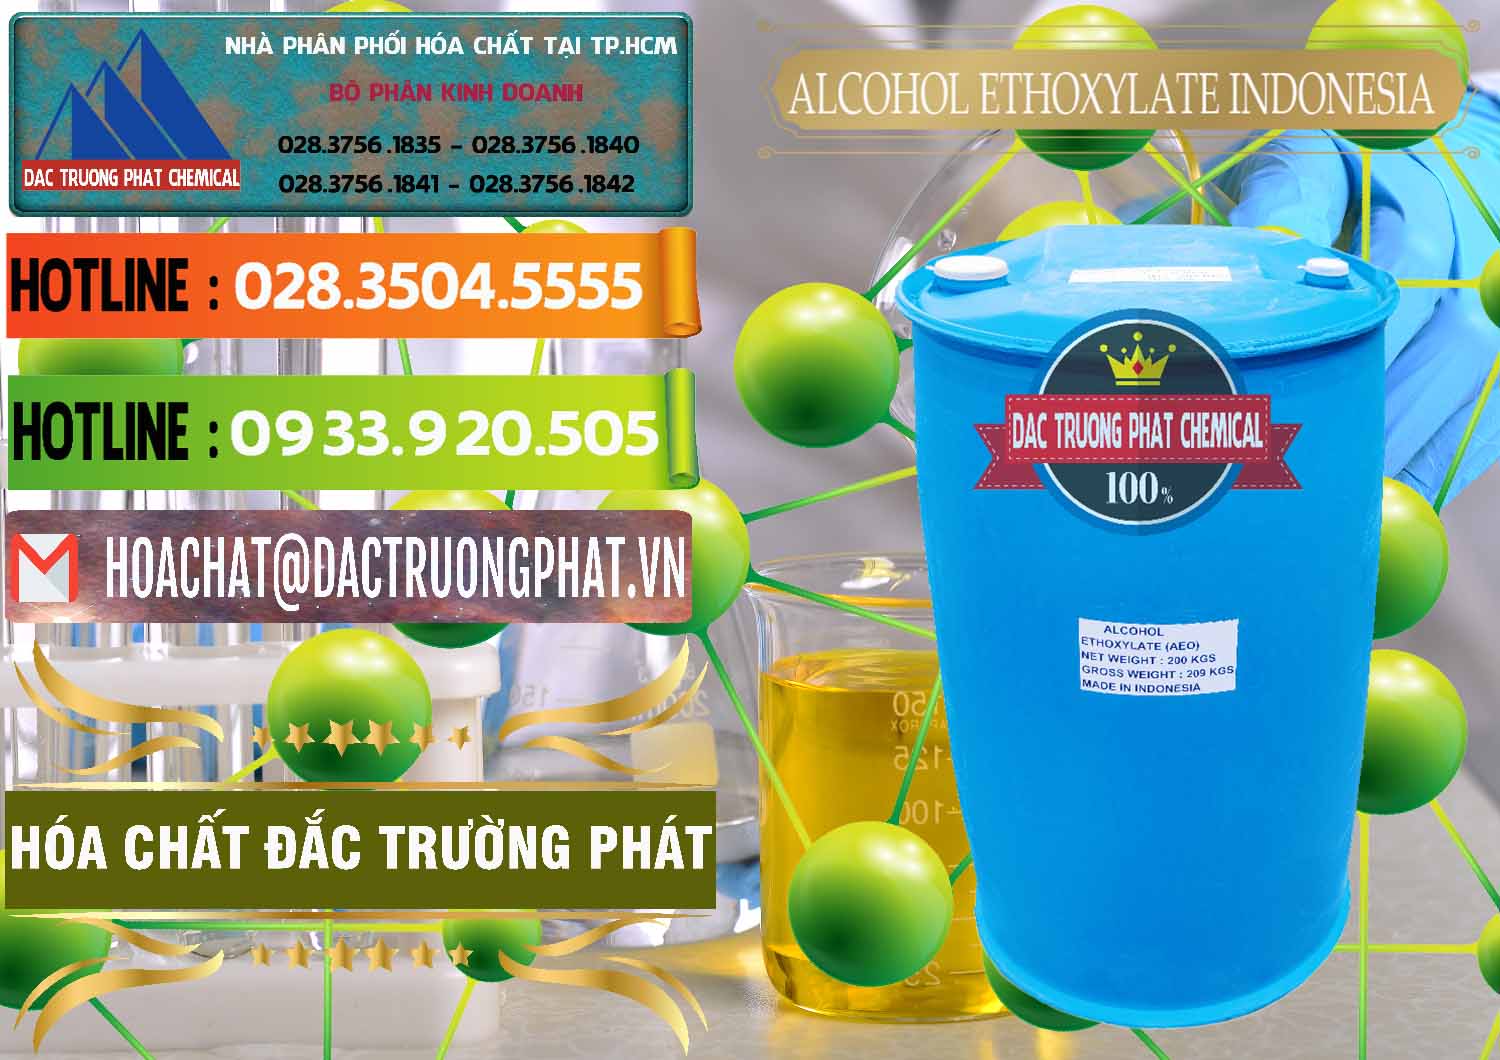 Cty chuyên bán & cung cấp Alcohol Ethoxylate Indonesia - 0308 - Đơn vị chuyên nhập khẩu và phân phối hóa chất tại TP.HCM - cungcaphoachat.com.vn